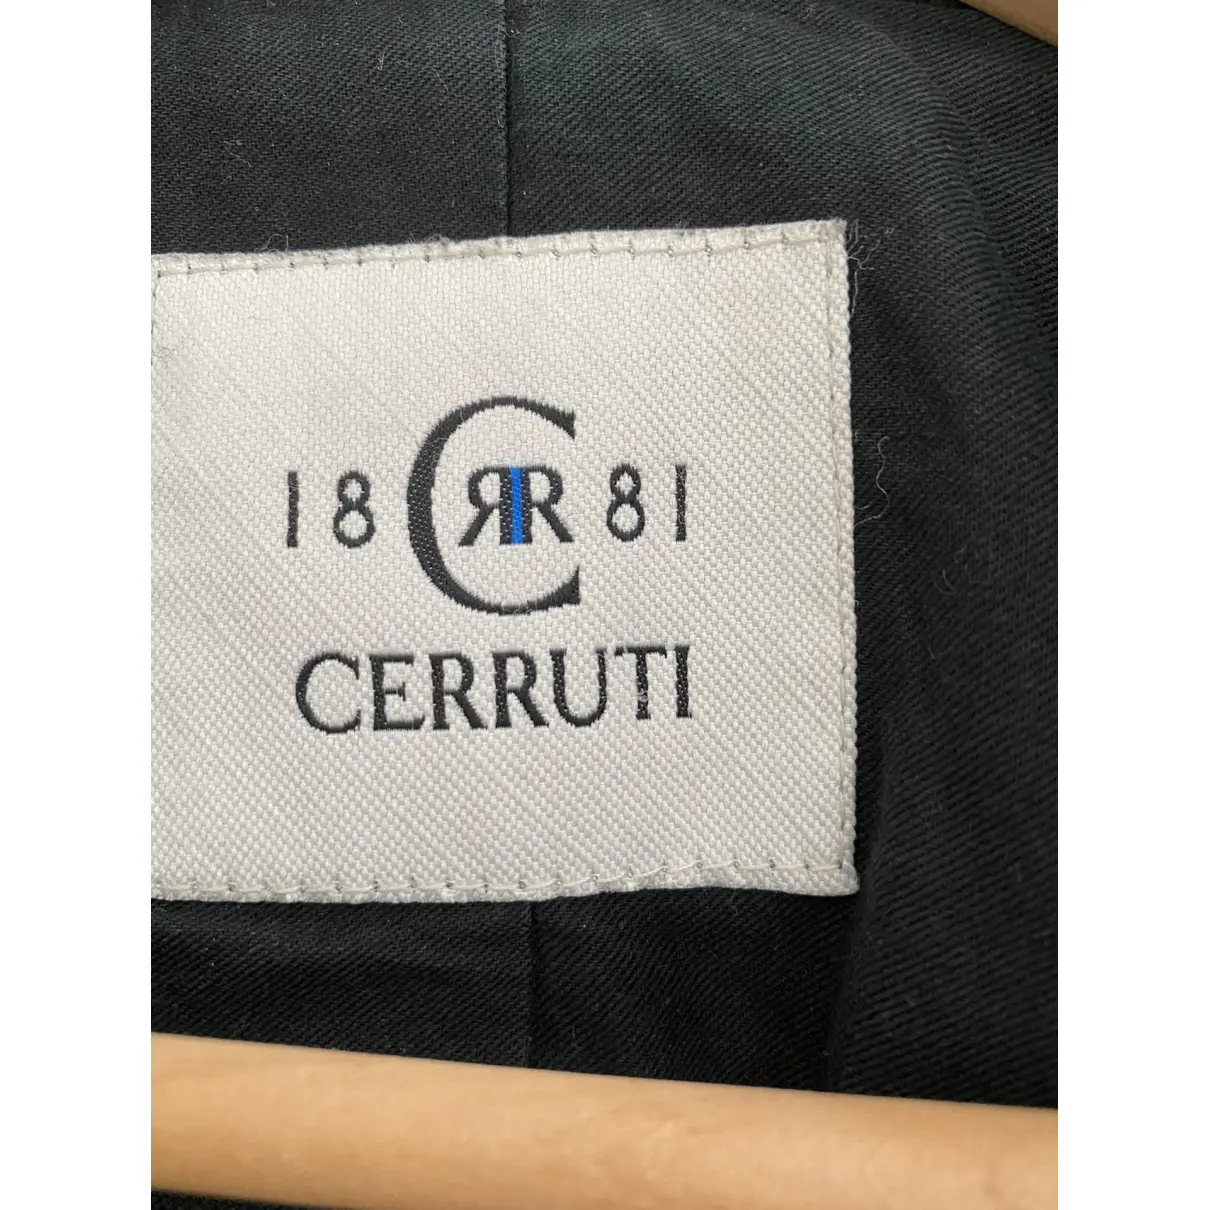 Buy Cerruti Wool peacoat online - Vintage